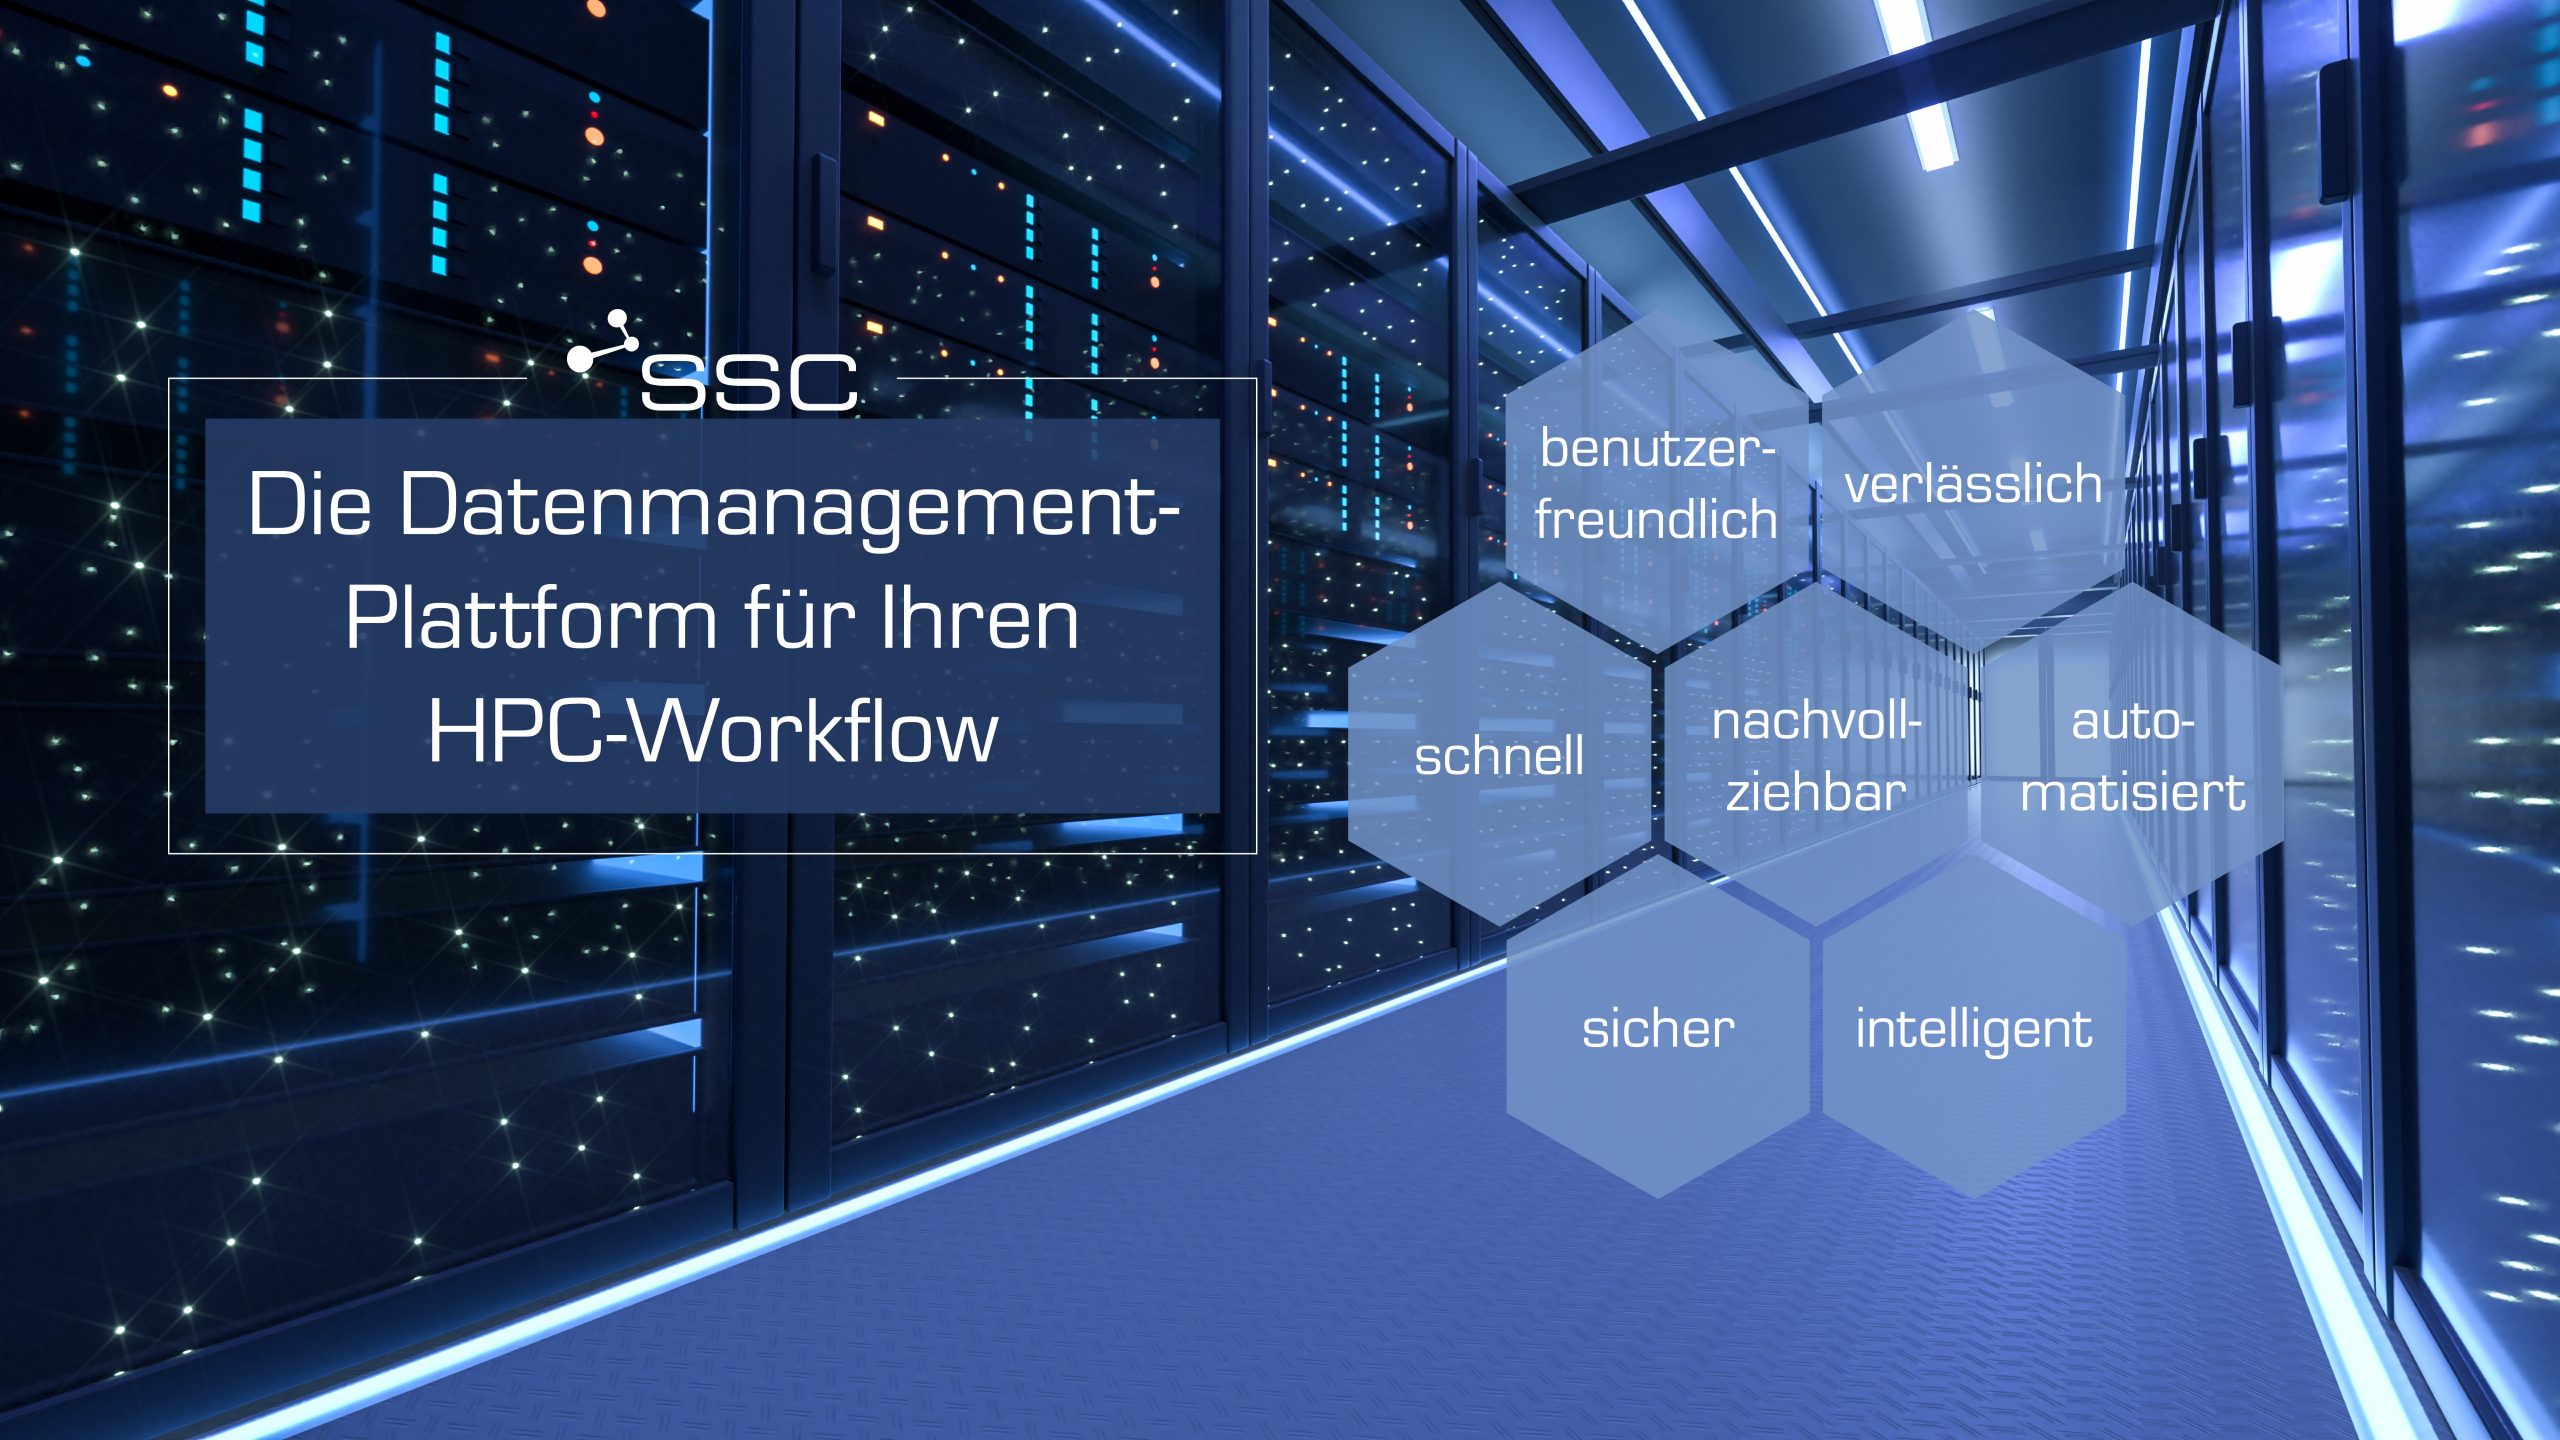 Datenmanagement-Workflow für morgen – SSC Data Management Workflow Portal